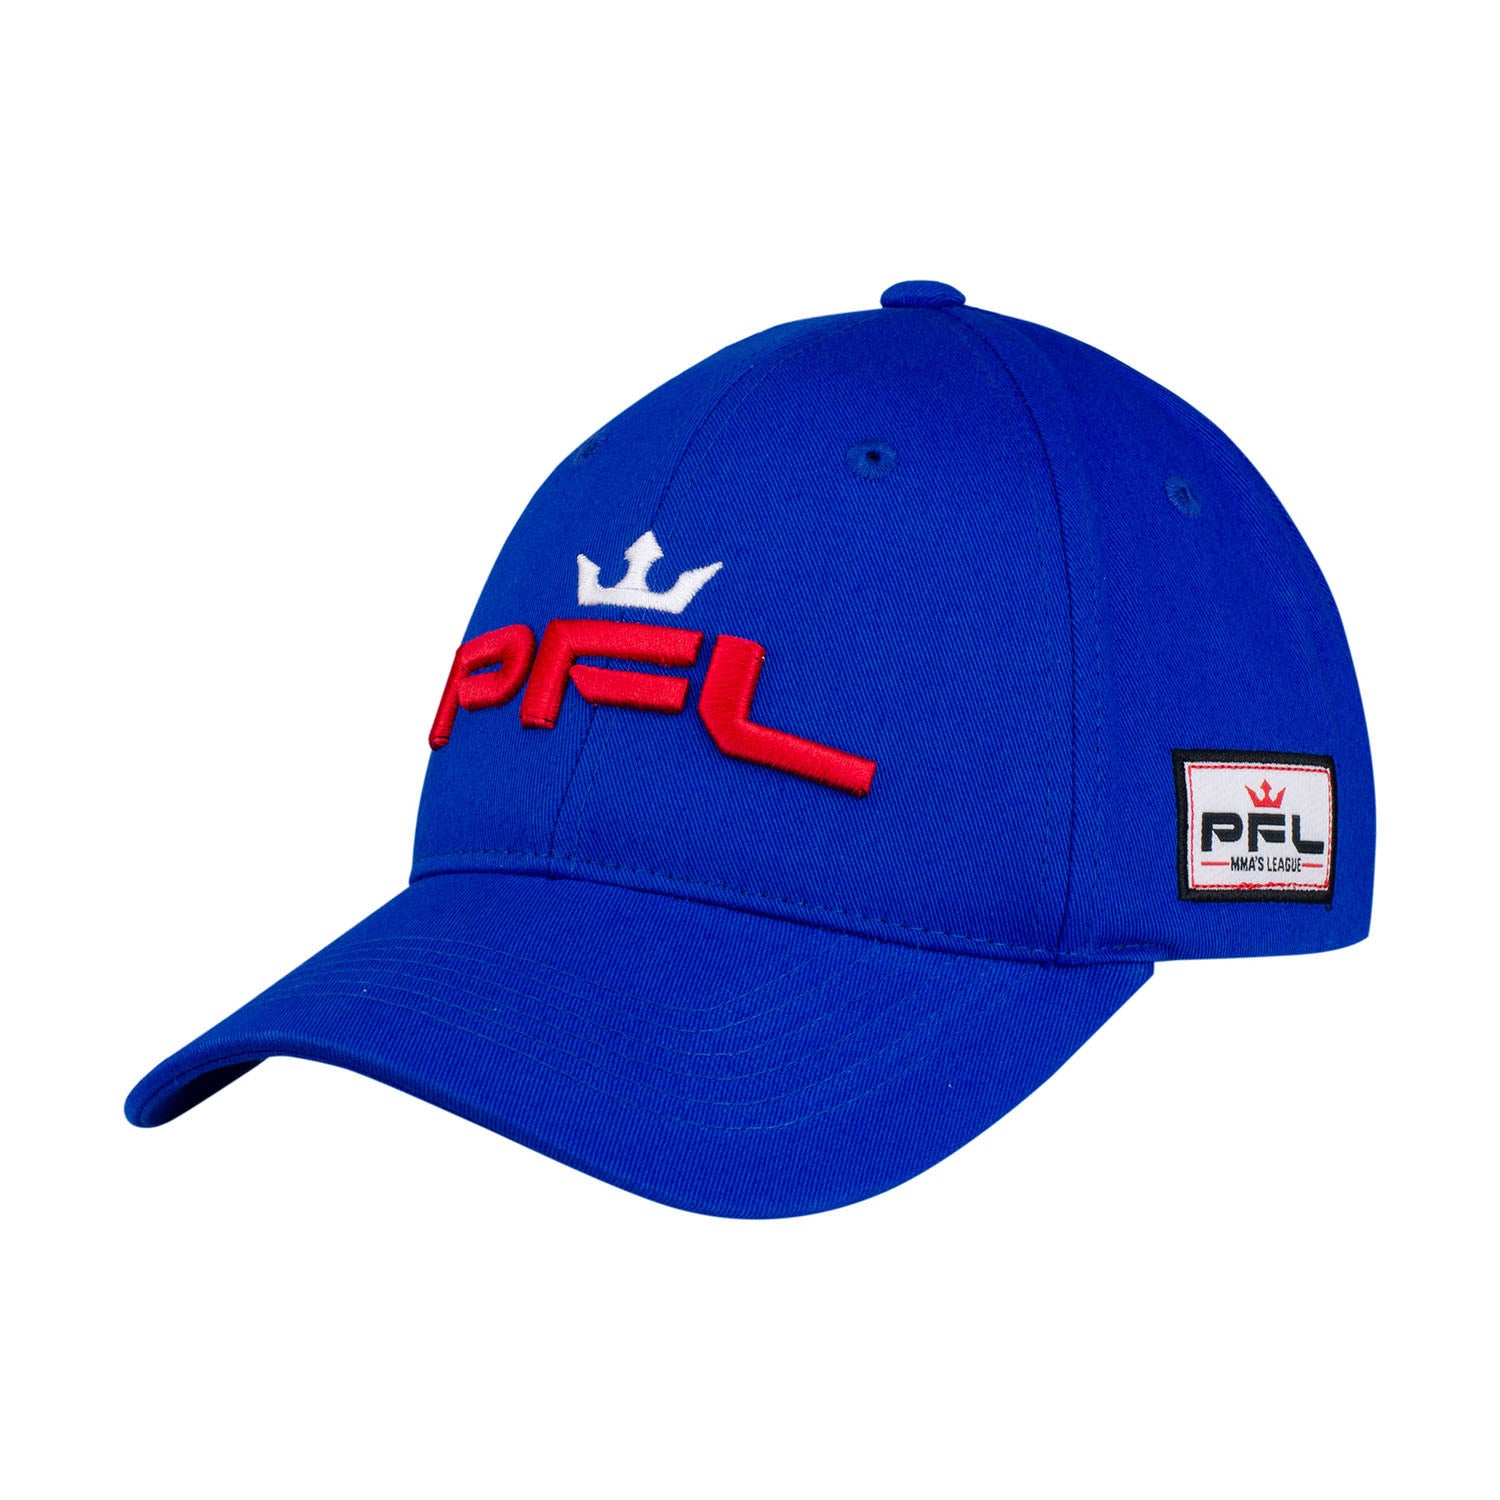 PFL Walkout Hat in Blue - Left Side View